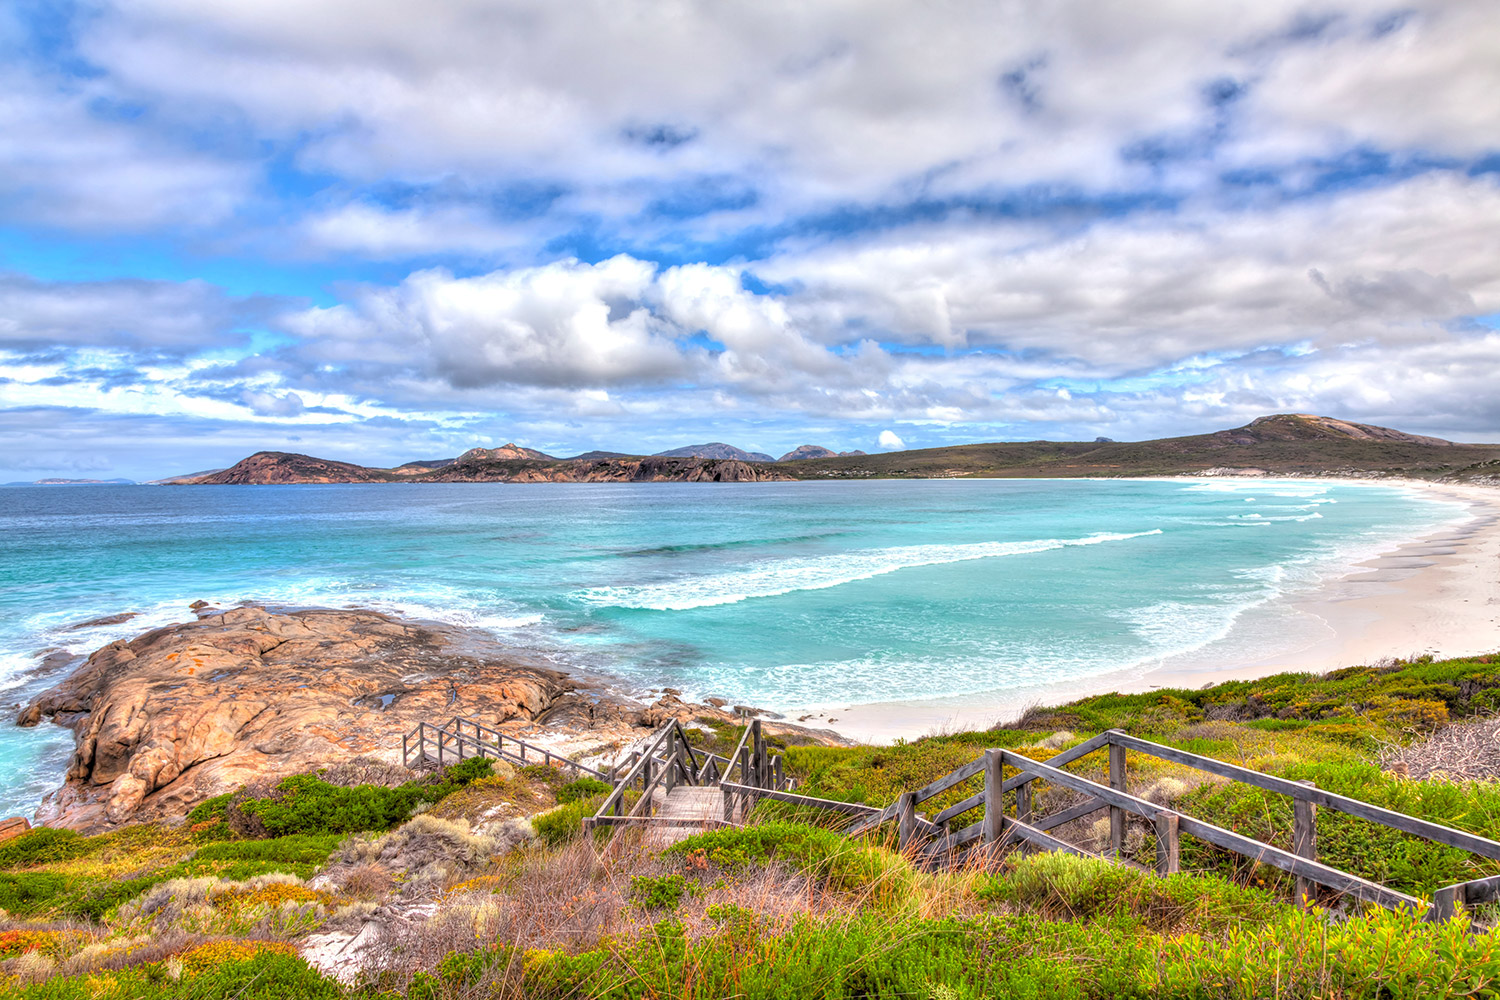 ساحل لاکی بی در استرالیای غربی برترین ساحل جهان لقب گرفت